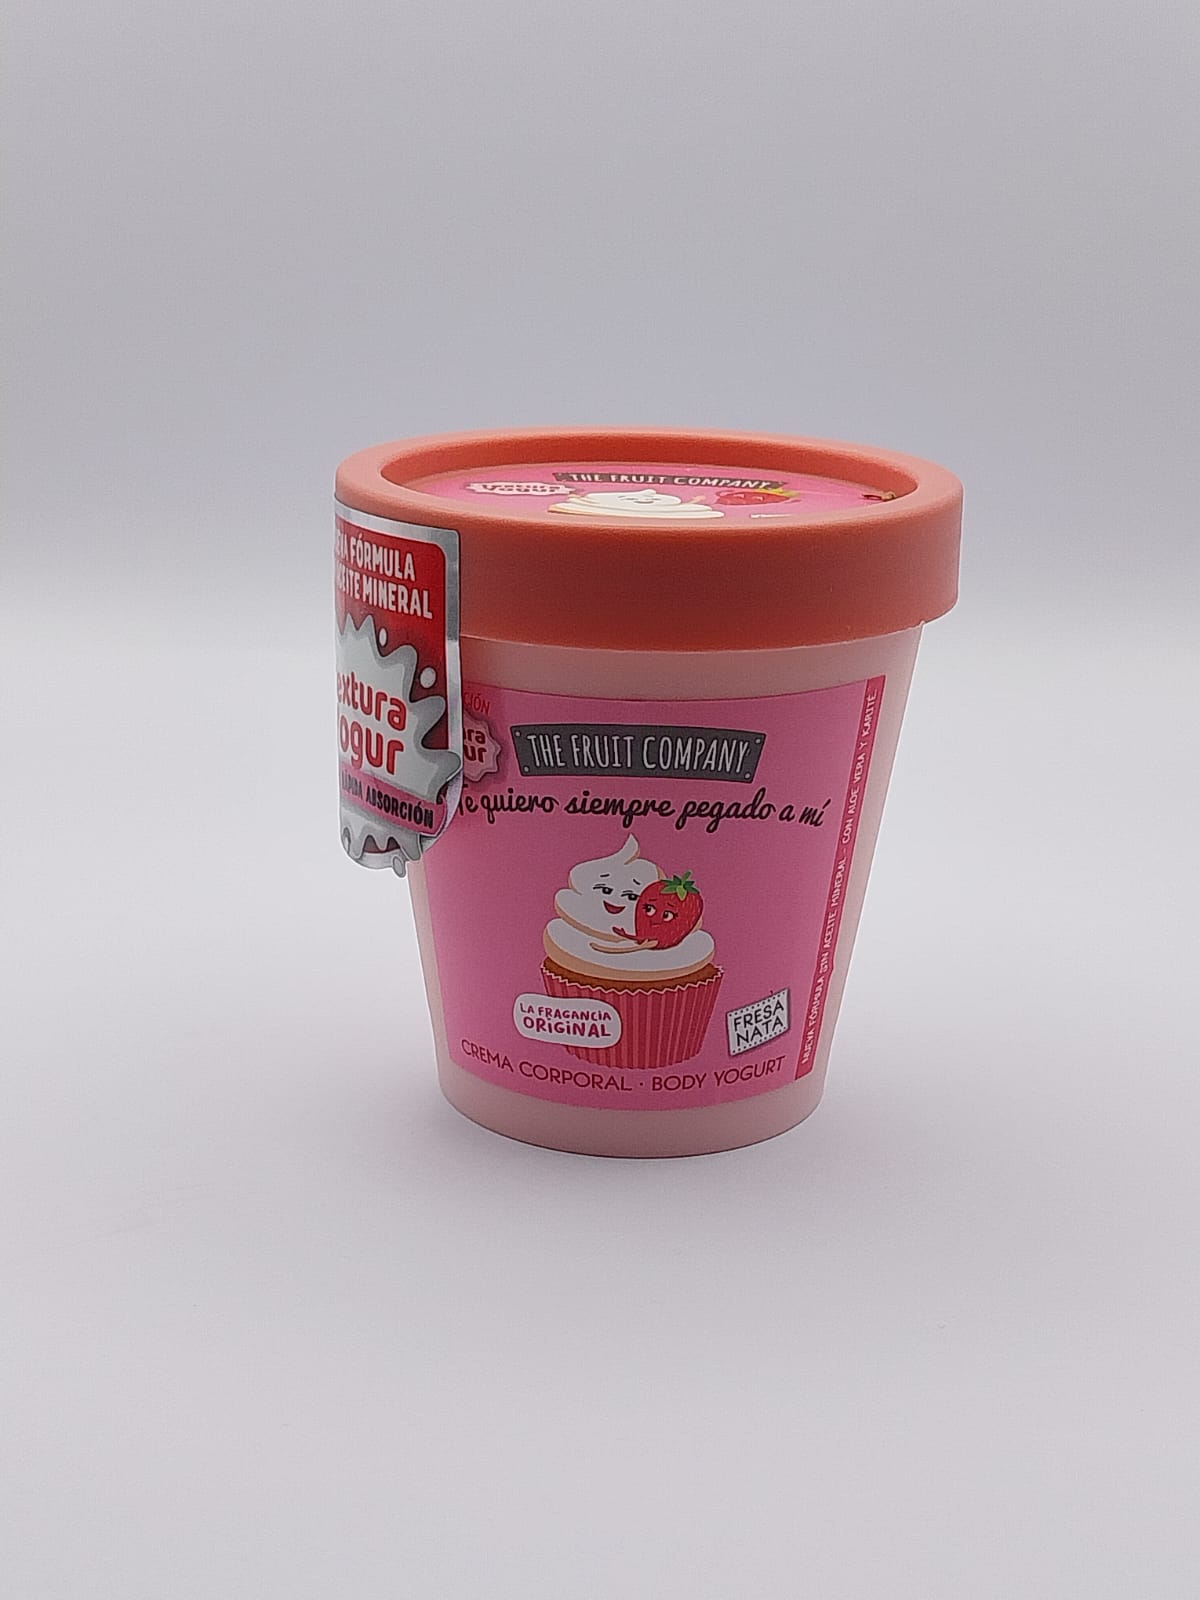 Crème Corporelle yaourt Fraise et Chantilly